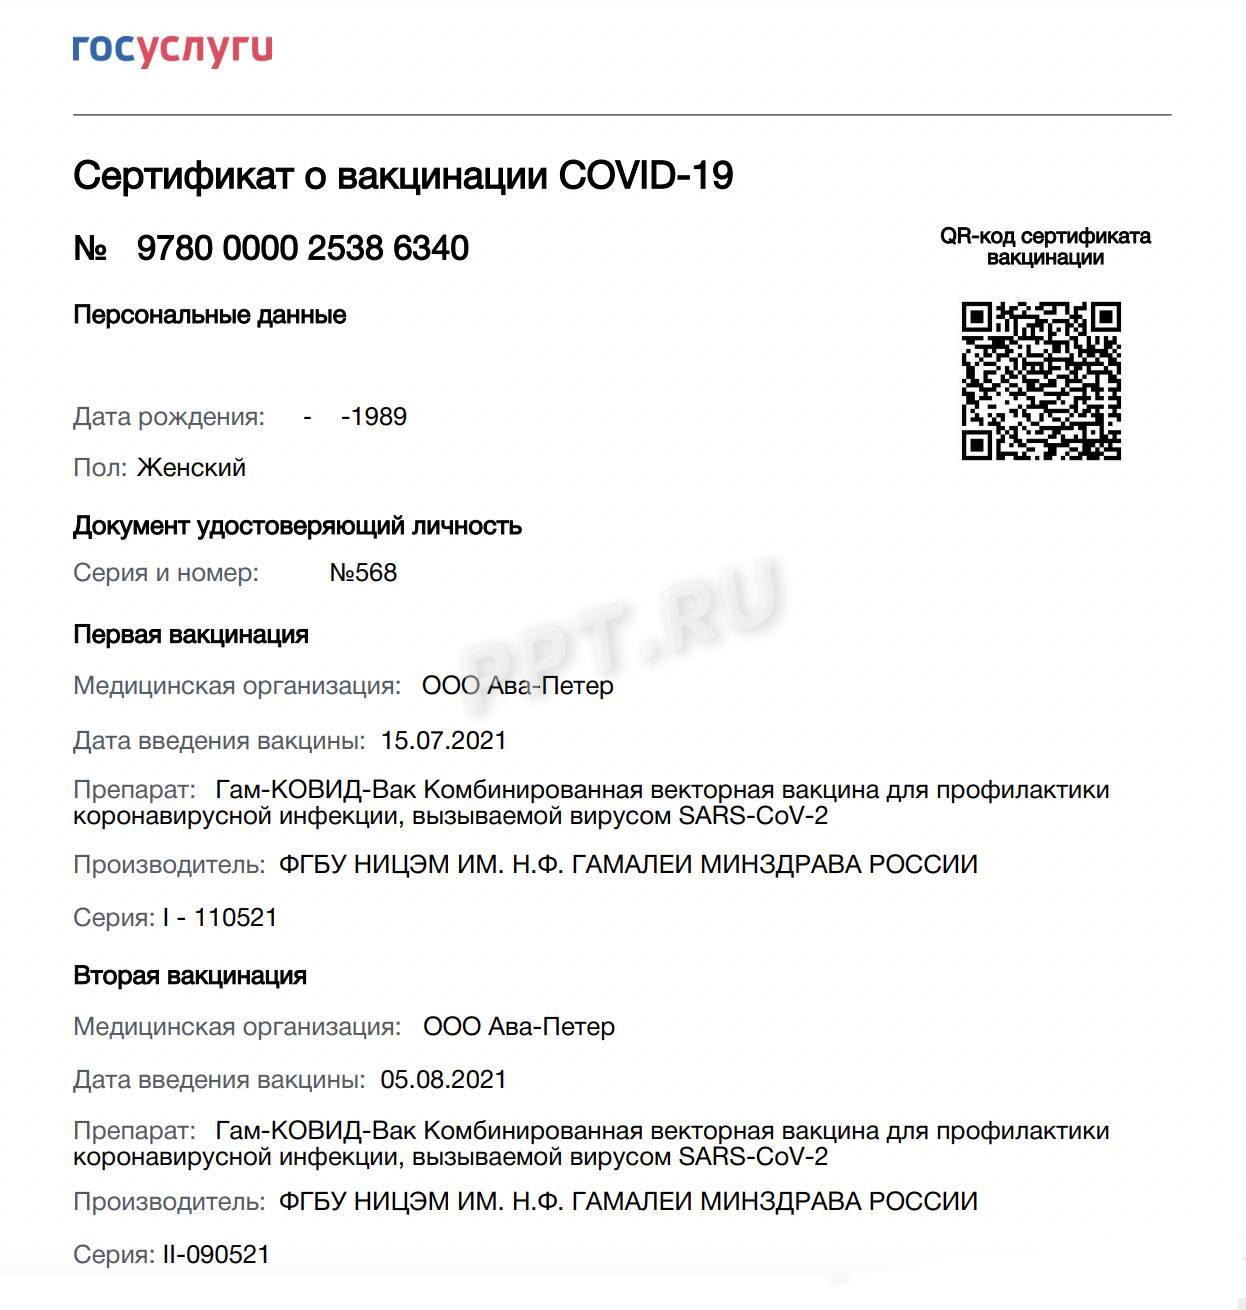 Образец первого сертификата о вакцинации против коронавирусной инфекции